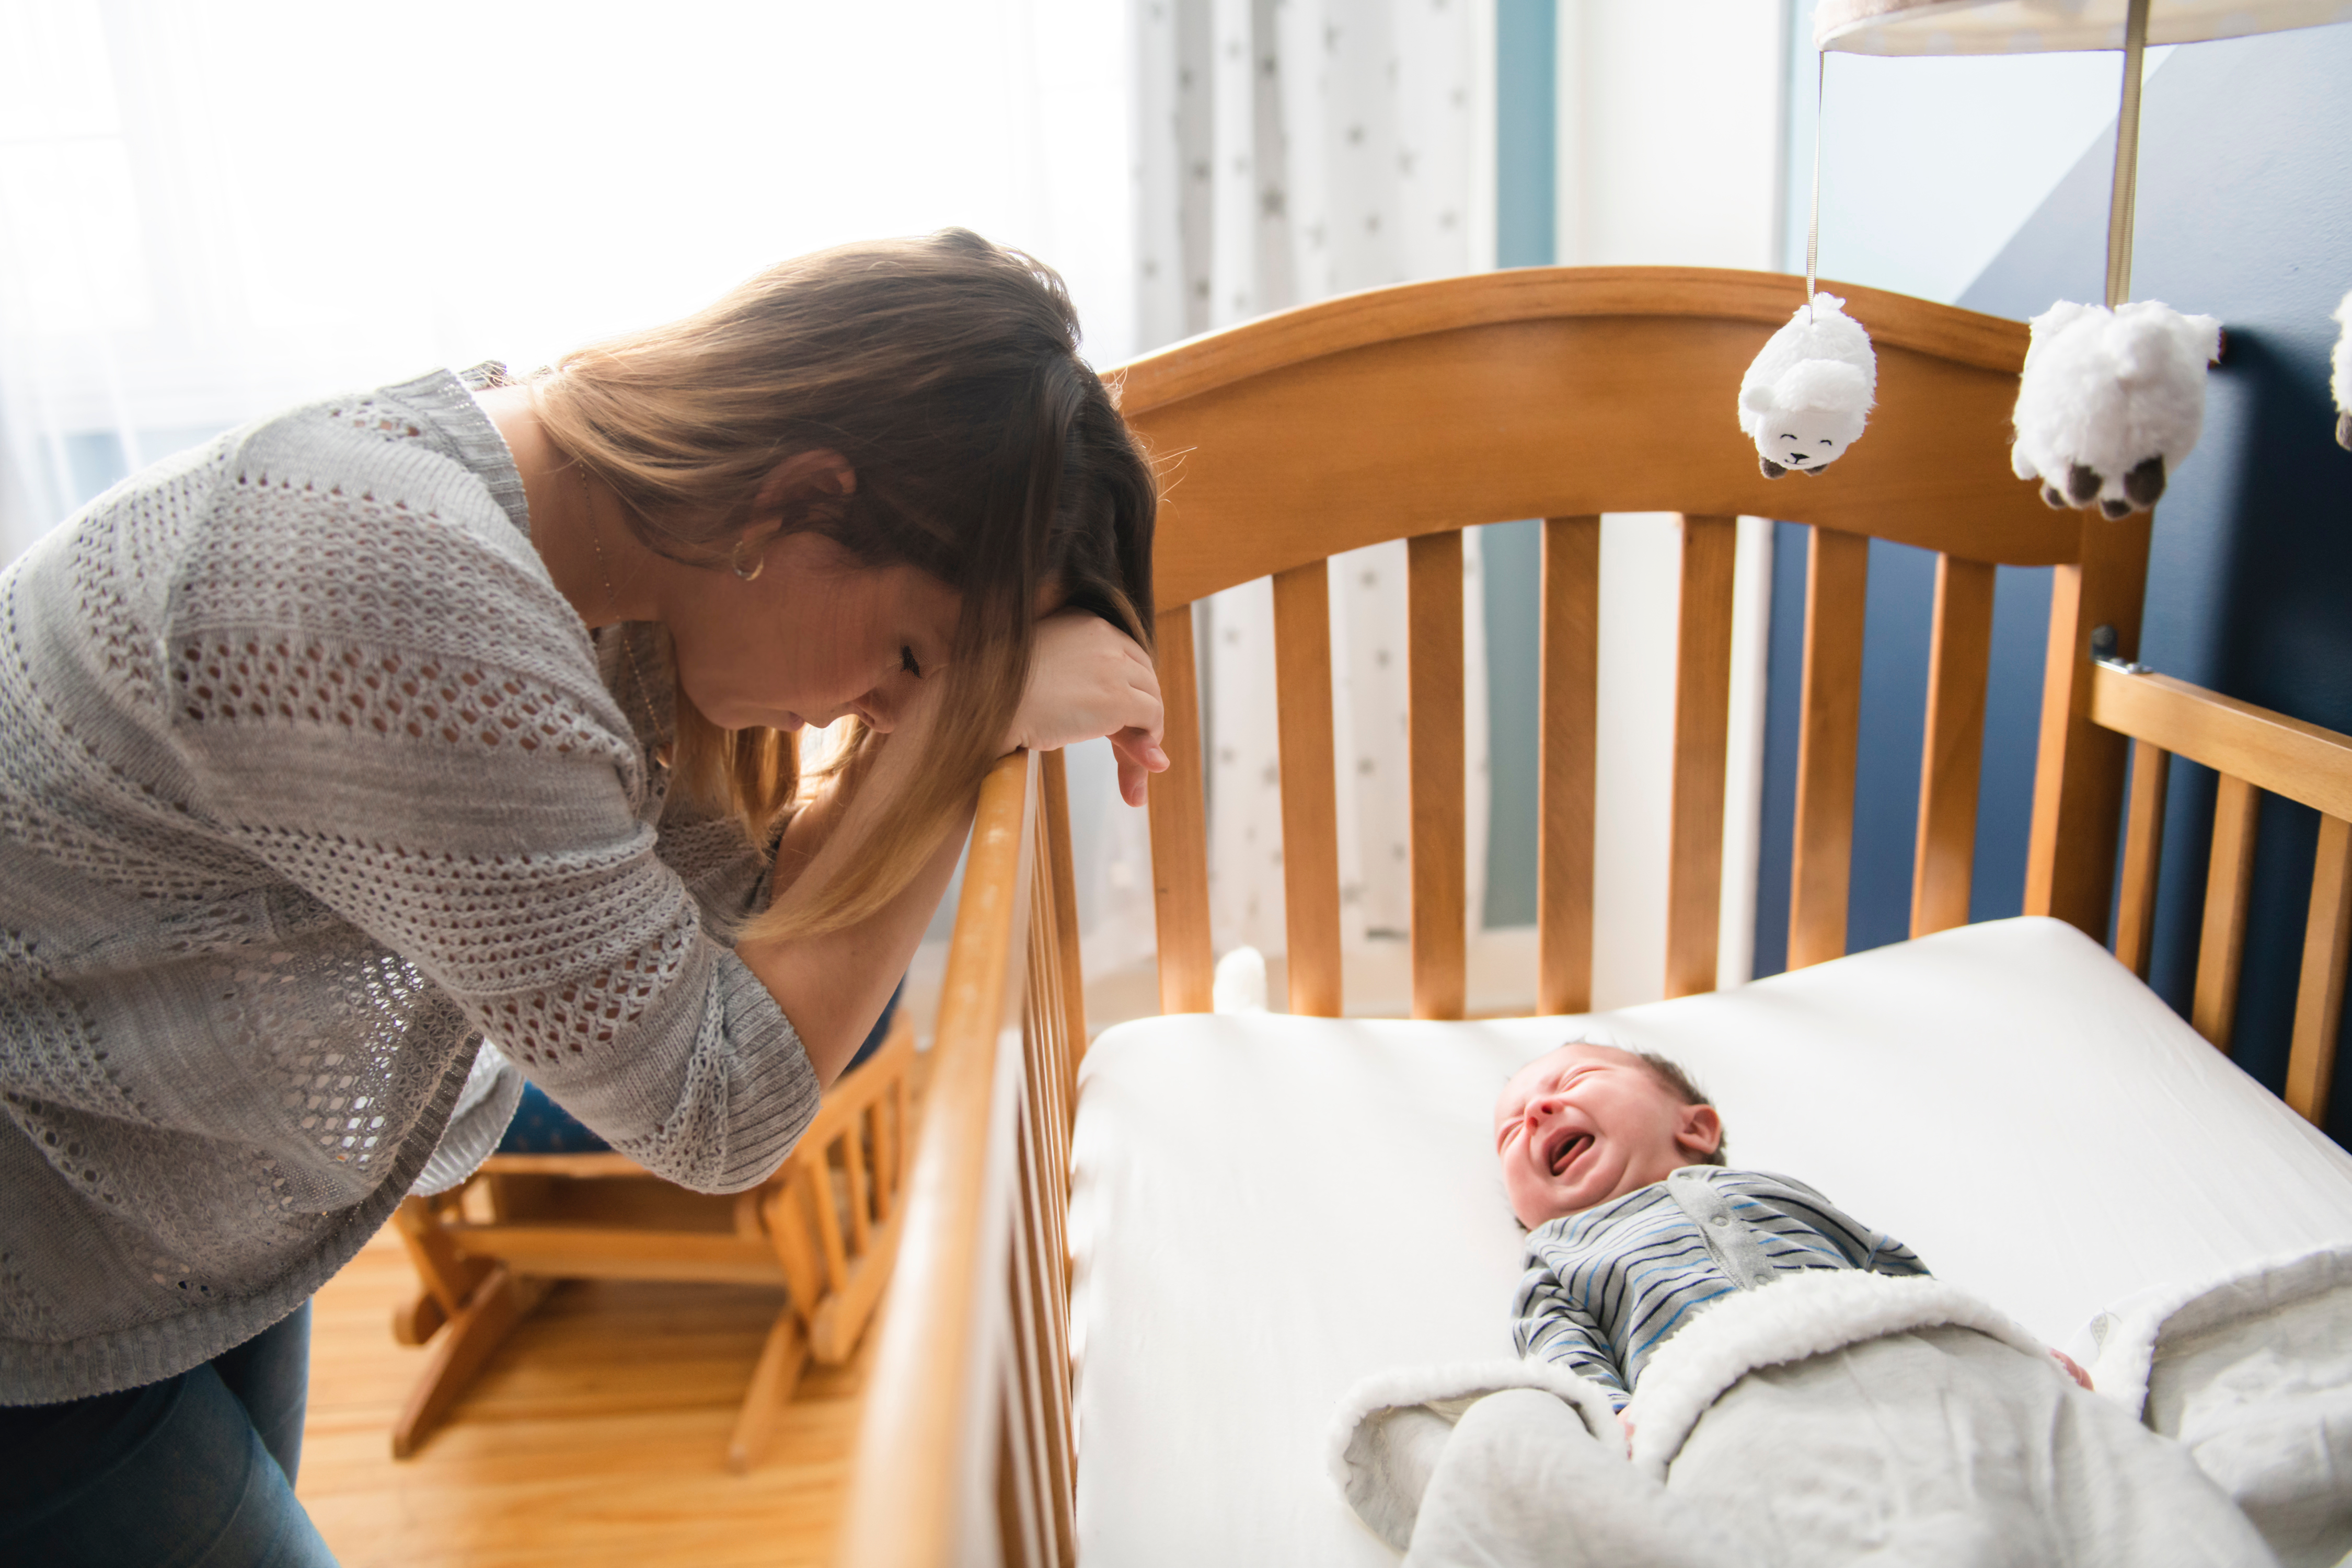 Une mère fatiguée avec un bébé qui pleure | Source : Shutterstock